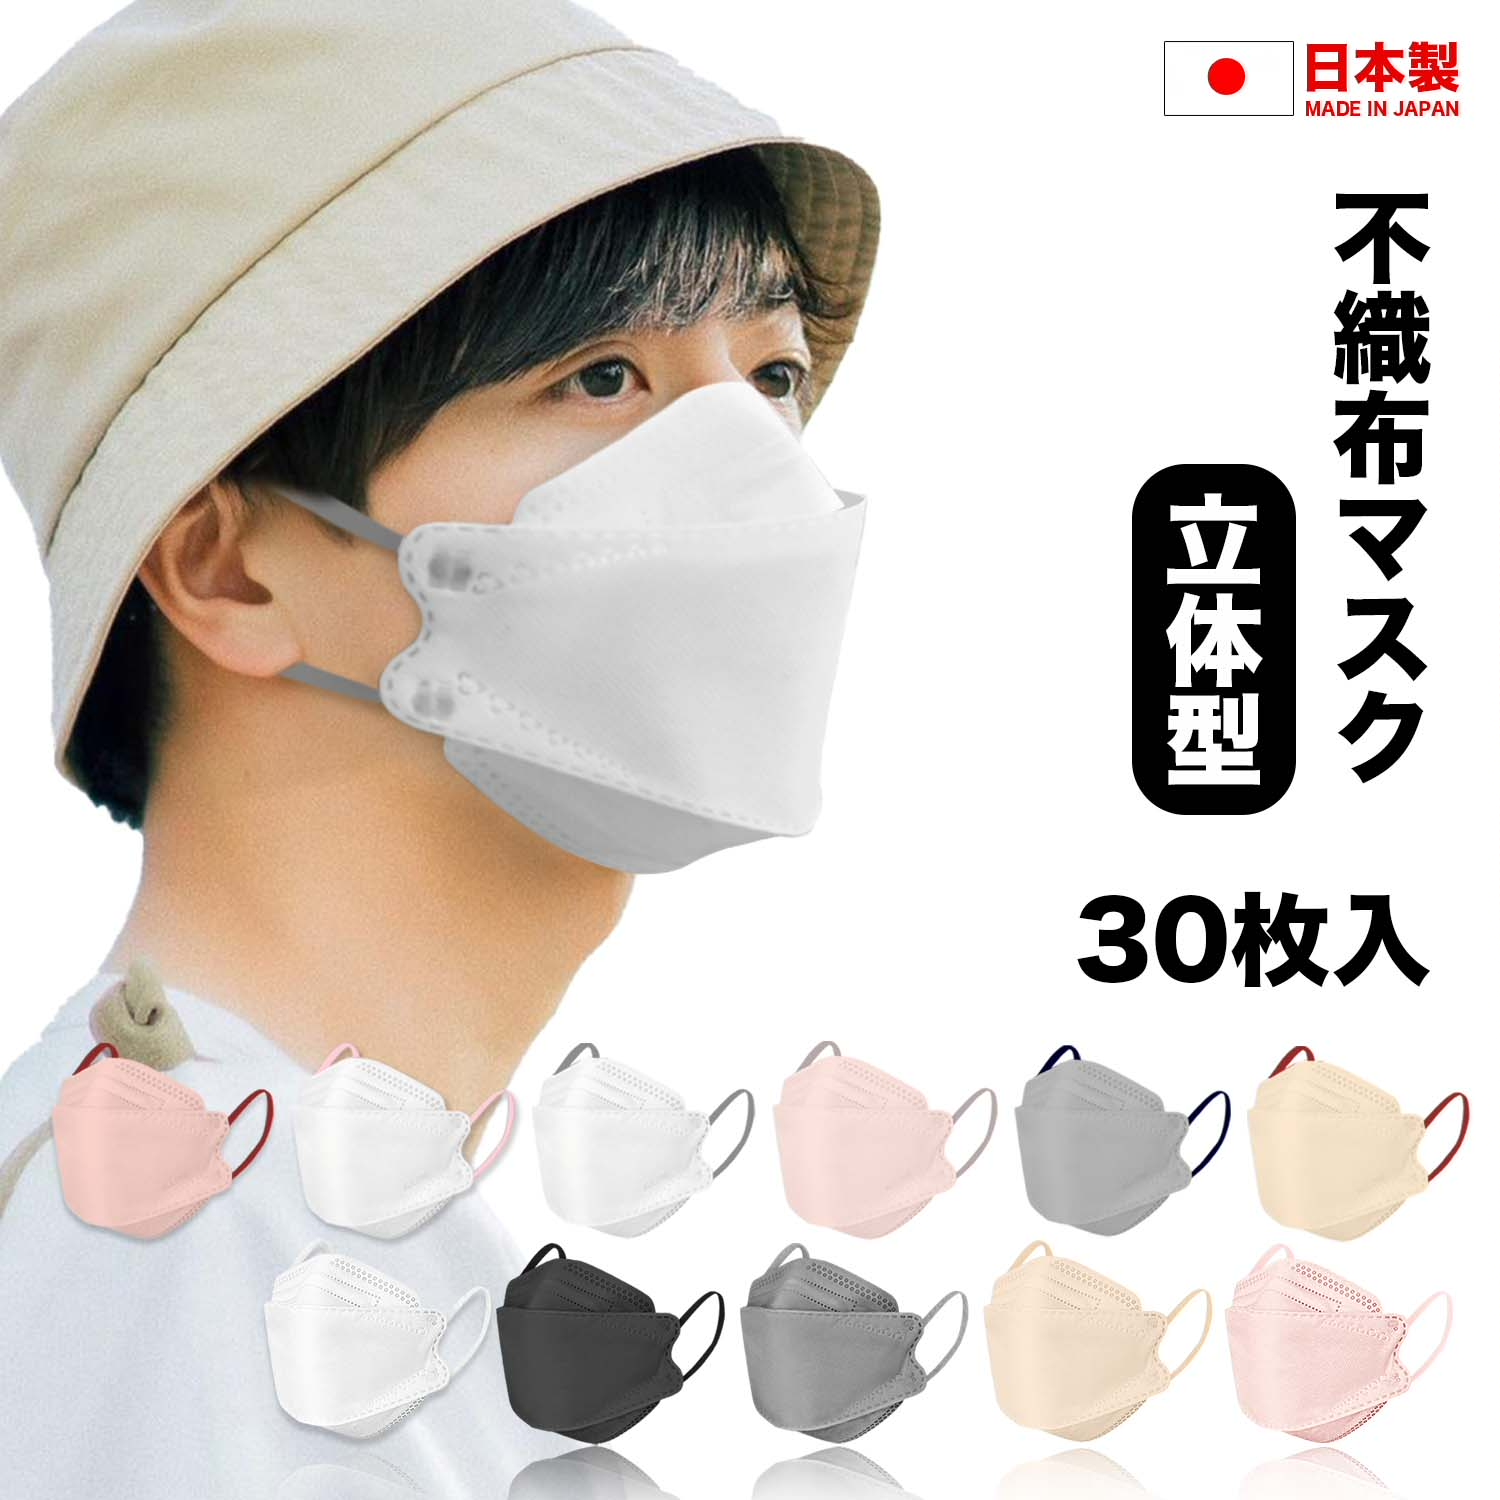 日本製マスク 不織布マスク 3D立体マスク 個別包装 30枚入り 高密度